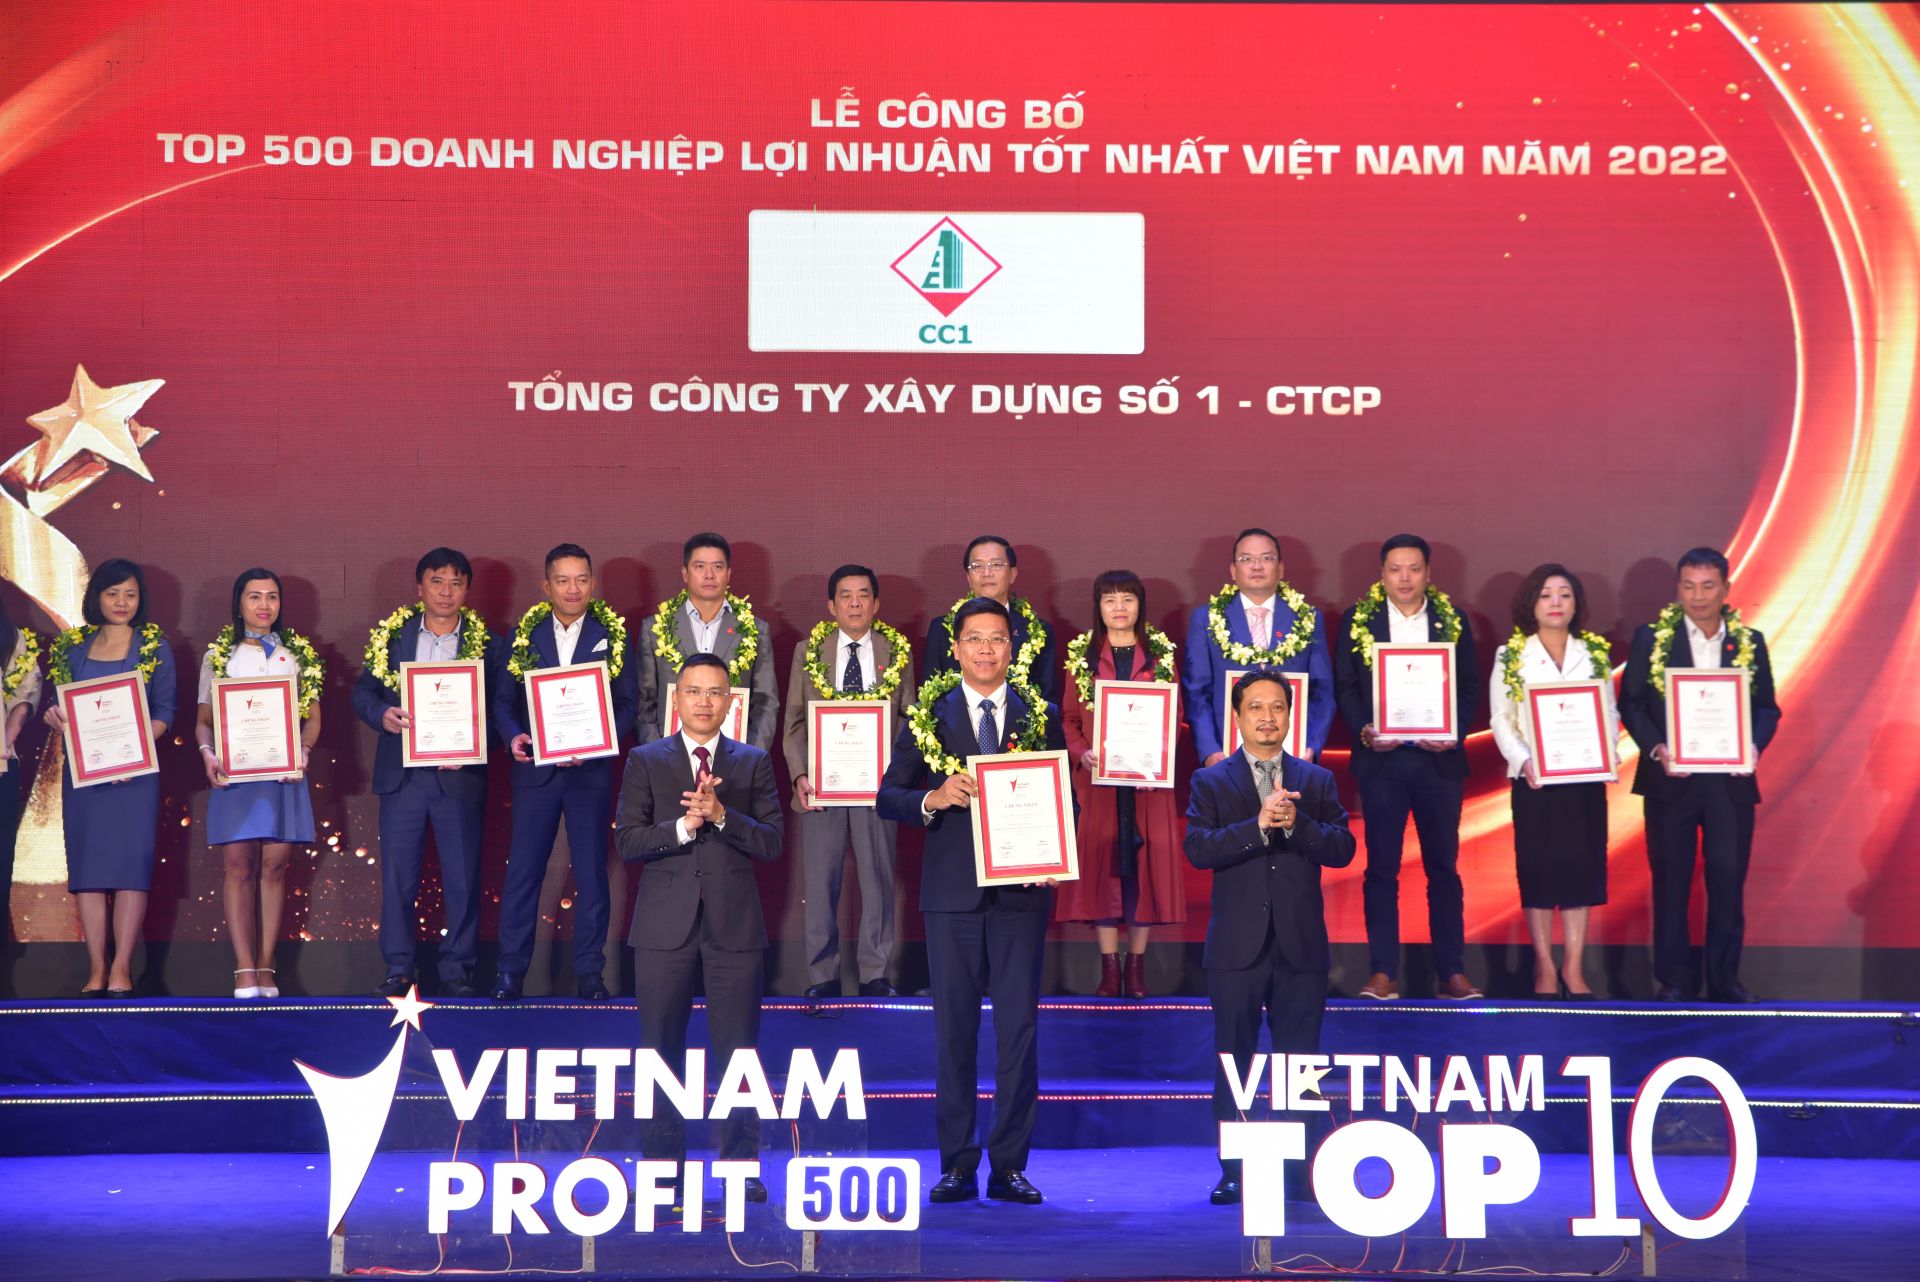 Tổng Công ty Xây dựng số 1 – CTCP (mã CC1- UPCoM) đã xuất sắc tăng 358 hạng, vươn lên đứng thứ 125/500 doanh nghiệp tư nhân có lợi nhuận tốt nhất Việt Nam